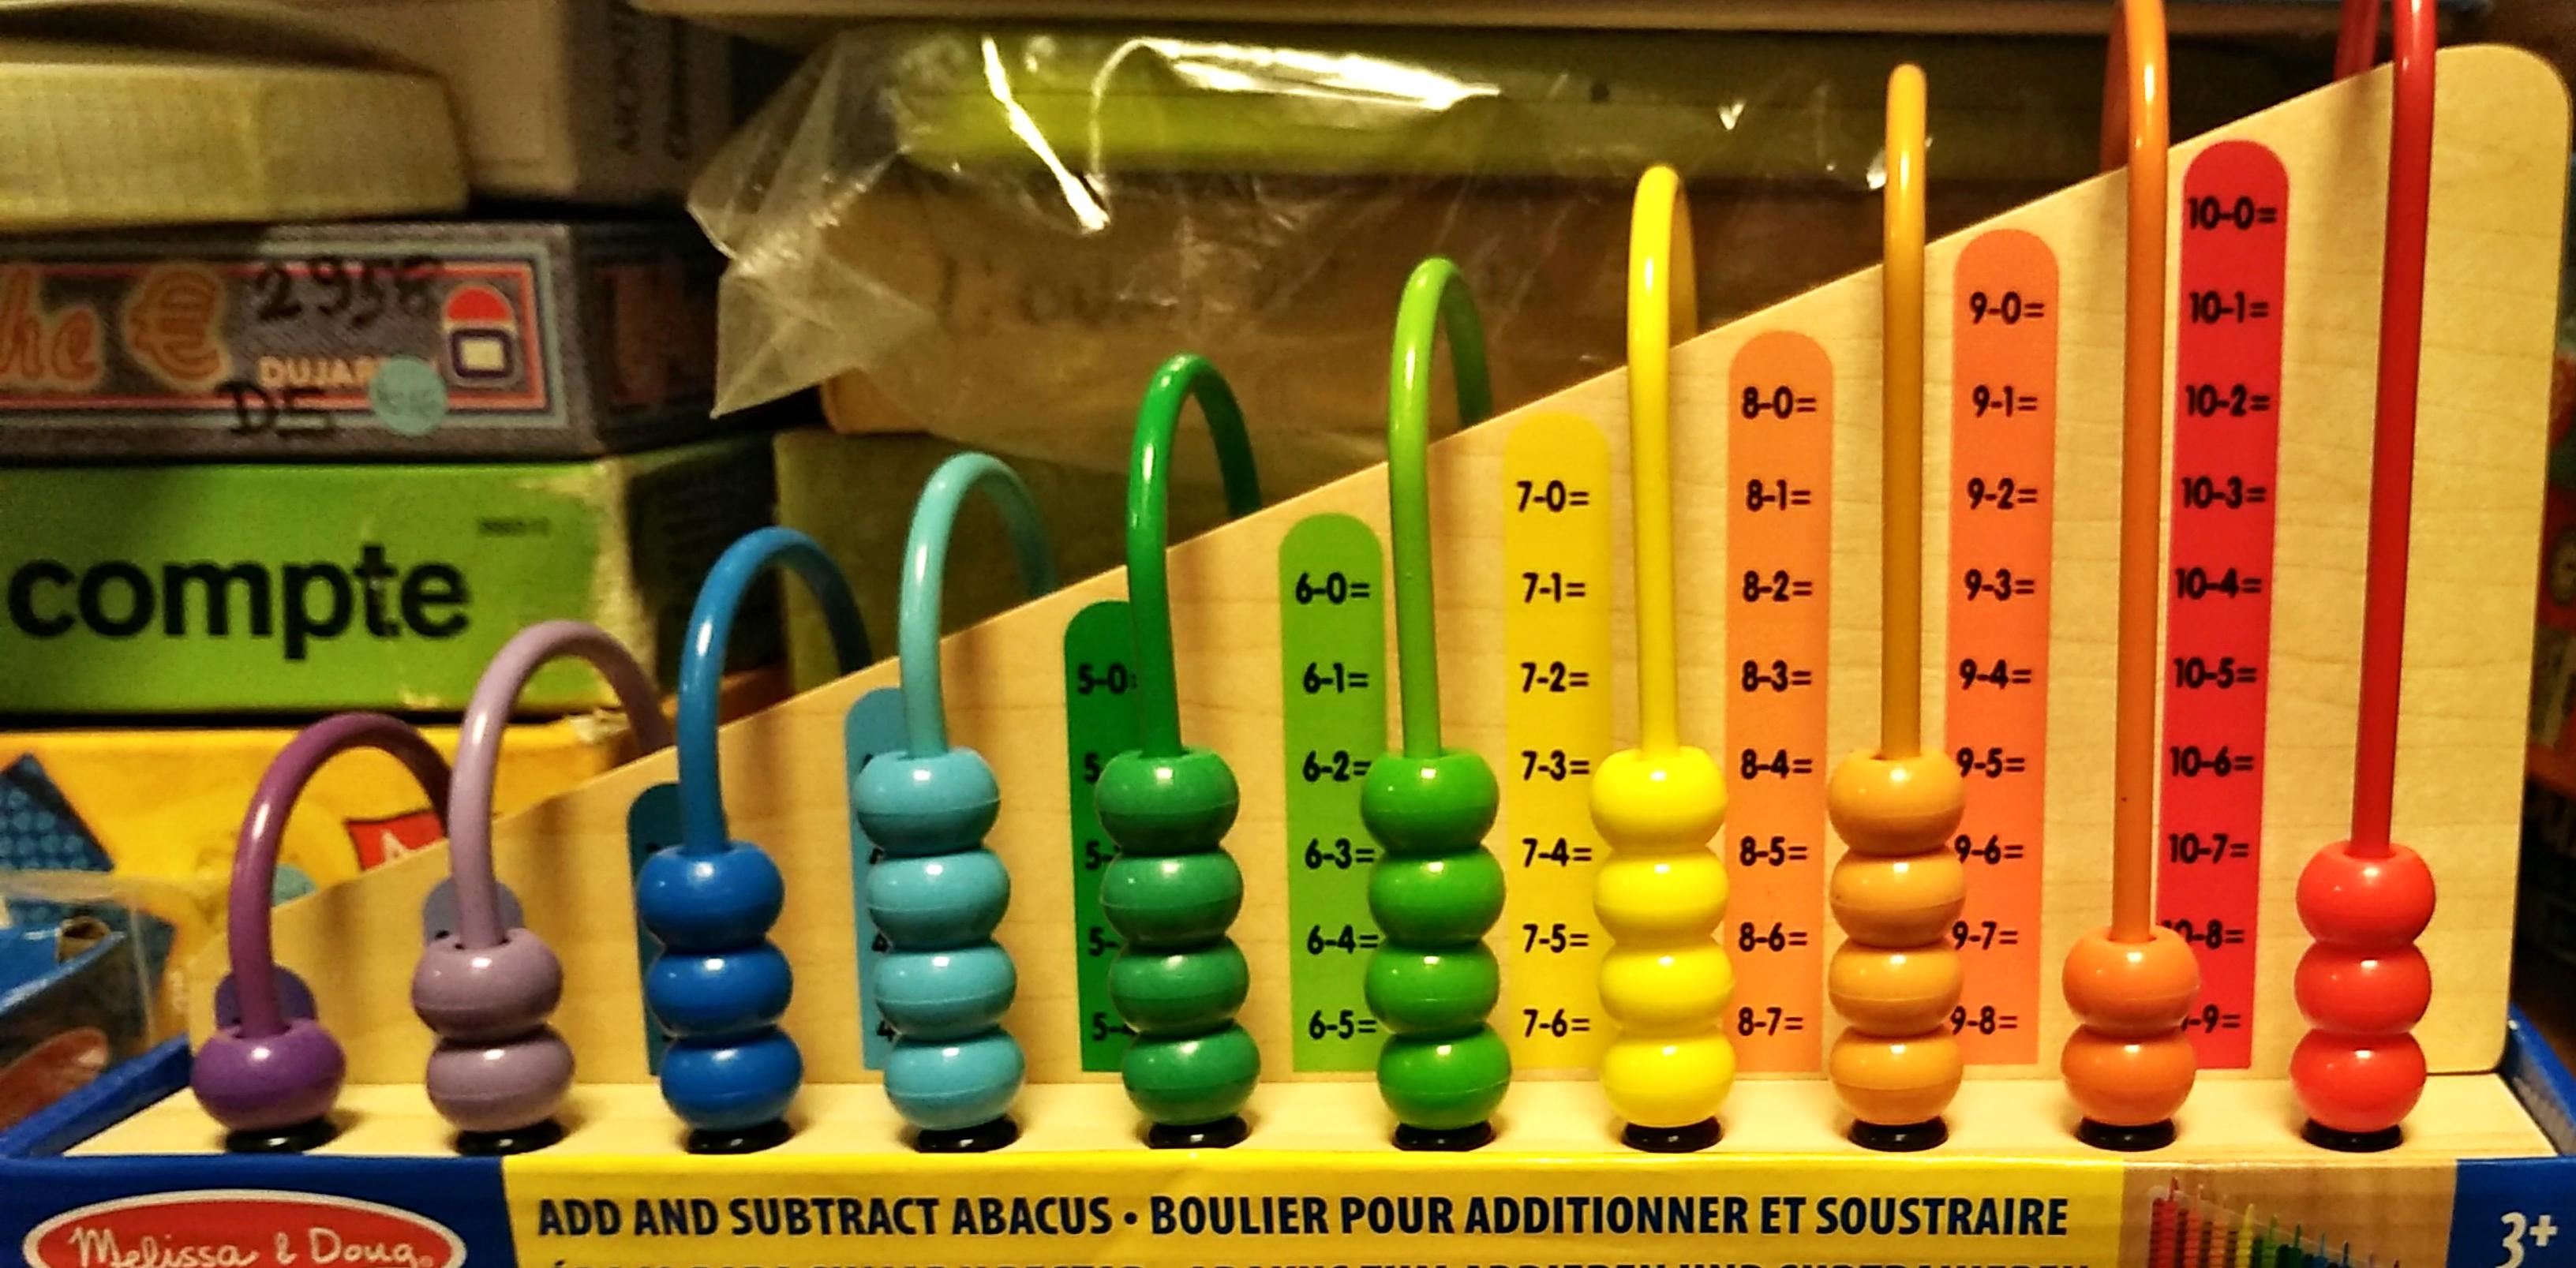 BOULIER APPRENTISSAGE<br>Référence ludothèque : 4104<br>1 à 2 joueur(s) <br>Ce boulier propose plusieurs façons d’explorer les chiffres, les couleurs et les motifs. Il suffit de faire glisser les deux planches en bois à double face dans la base, puis d’encourager les enfants à résoudre les équations en alignant le bon nombre de boules sur les faces addition et soustraction ou à suivre les motifs sur les faces d’appariement de couleurs